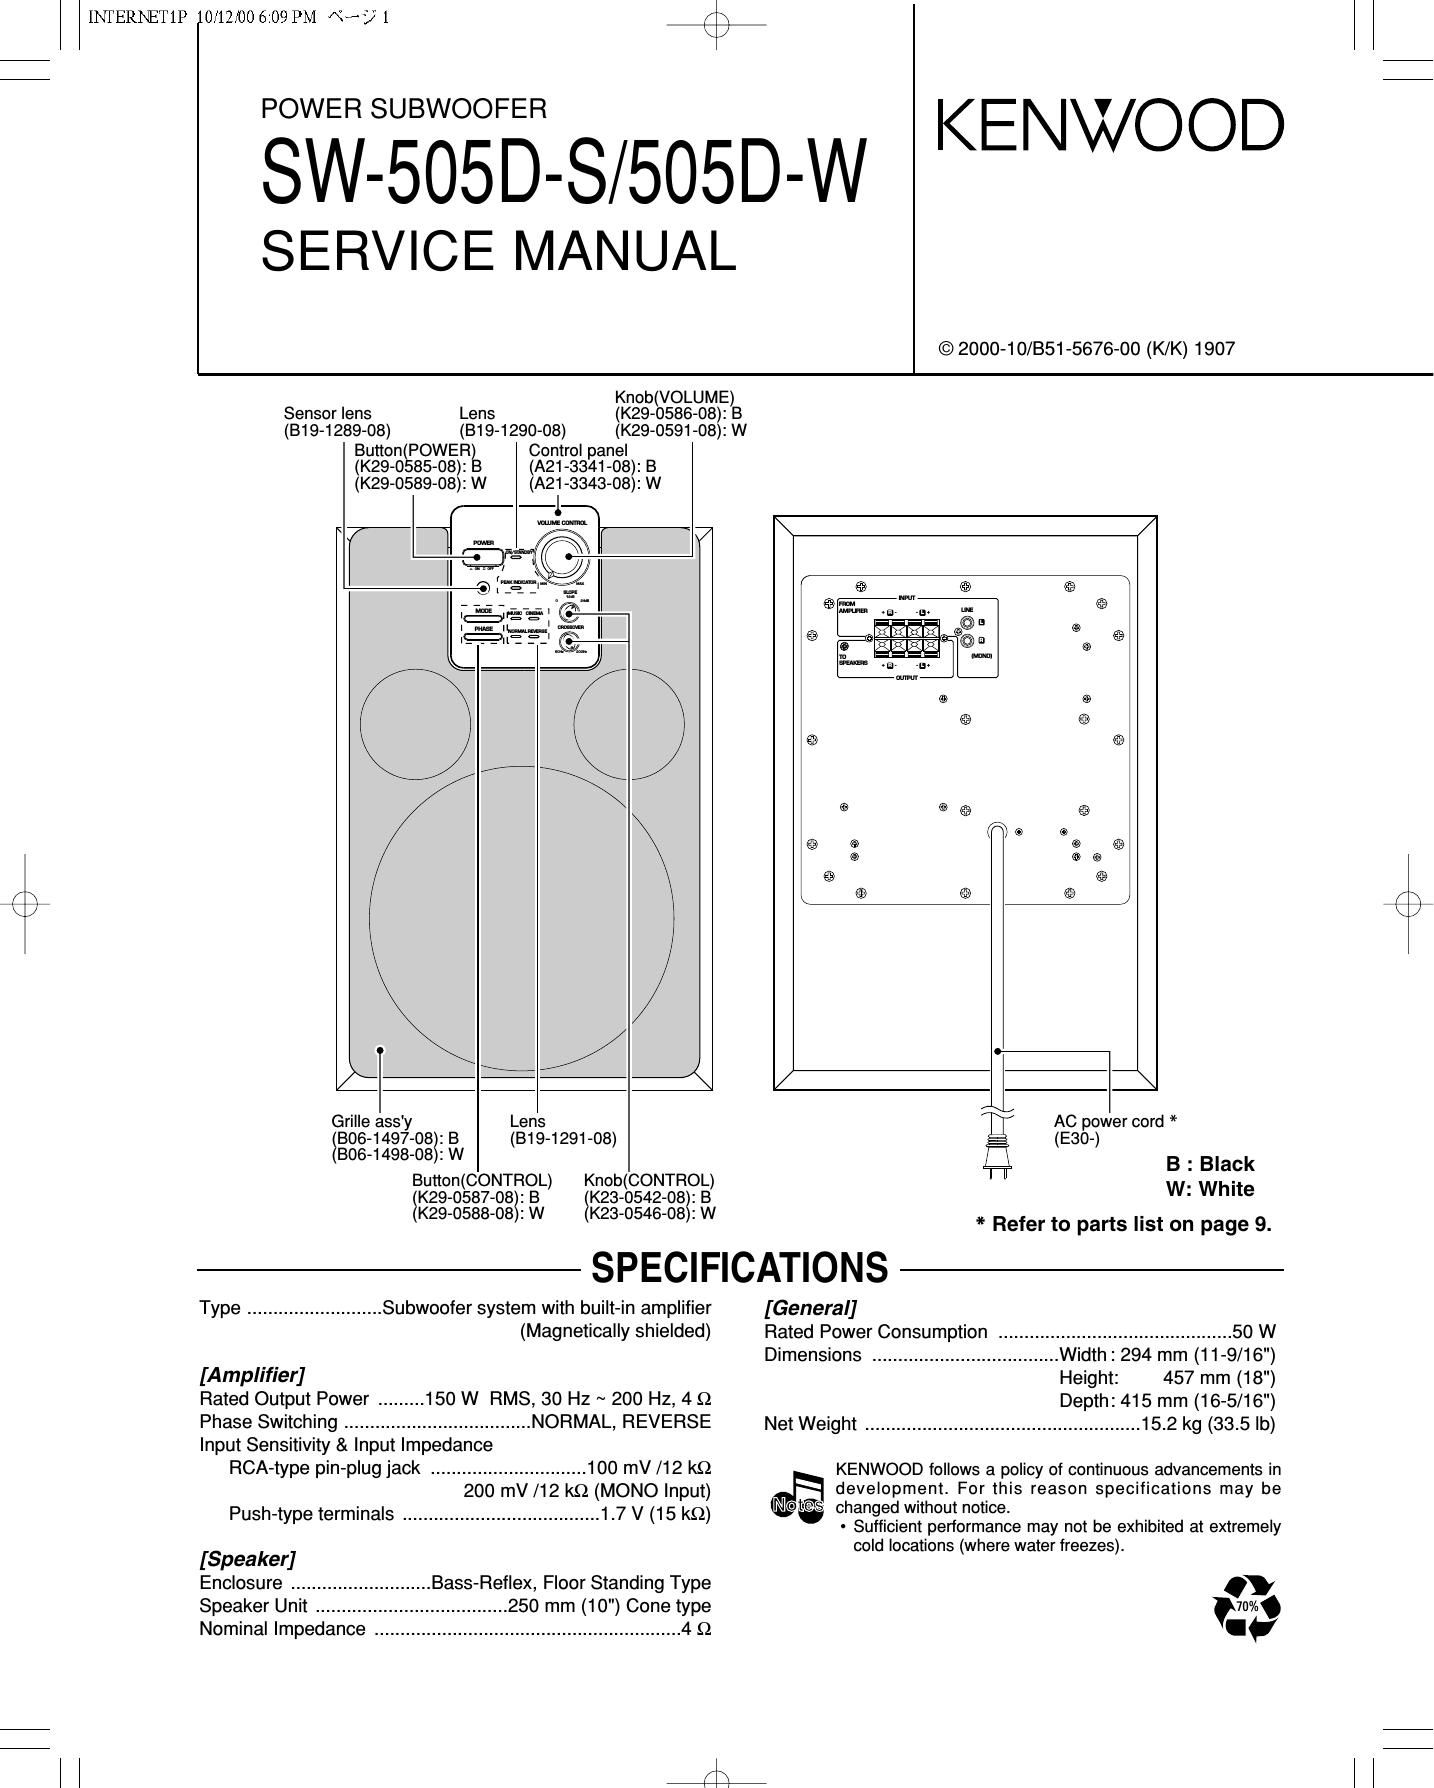 Kenwood 505 DW Service Manual